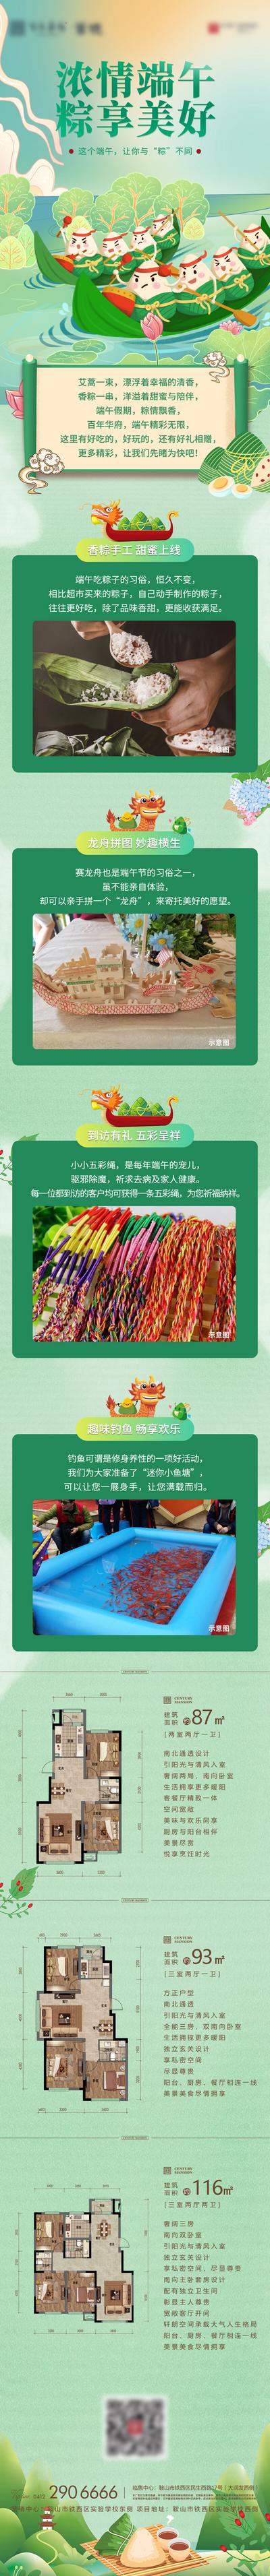 南门网 专题设计 长图 地产 中国传统节日 端午节 插画 创意